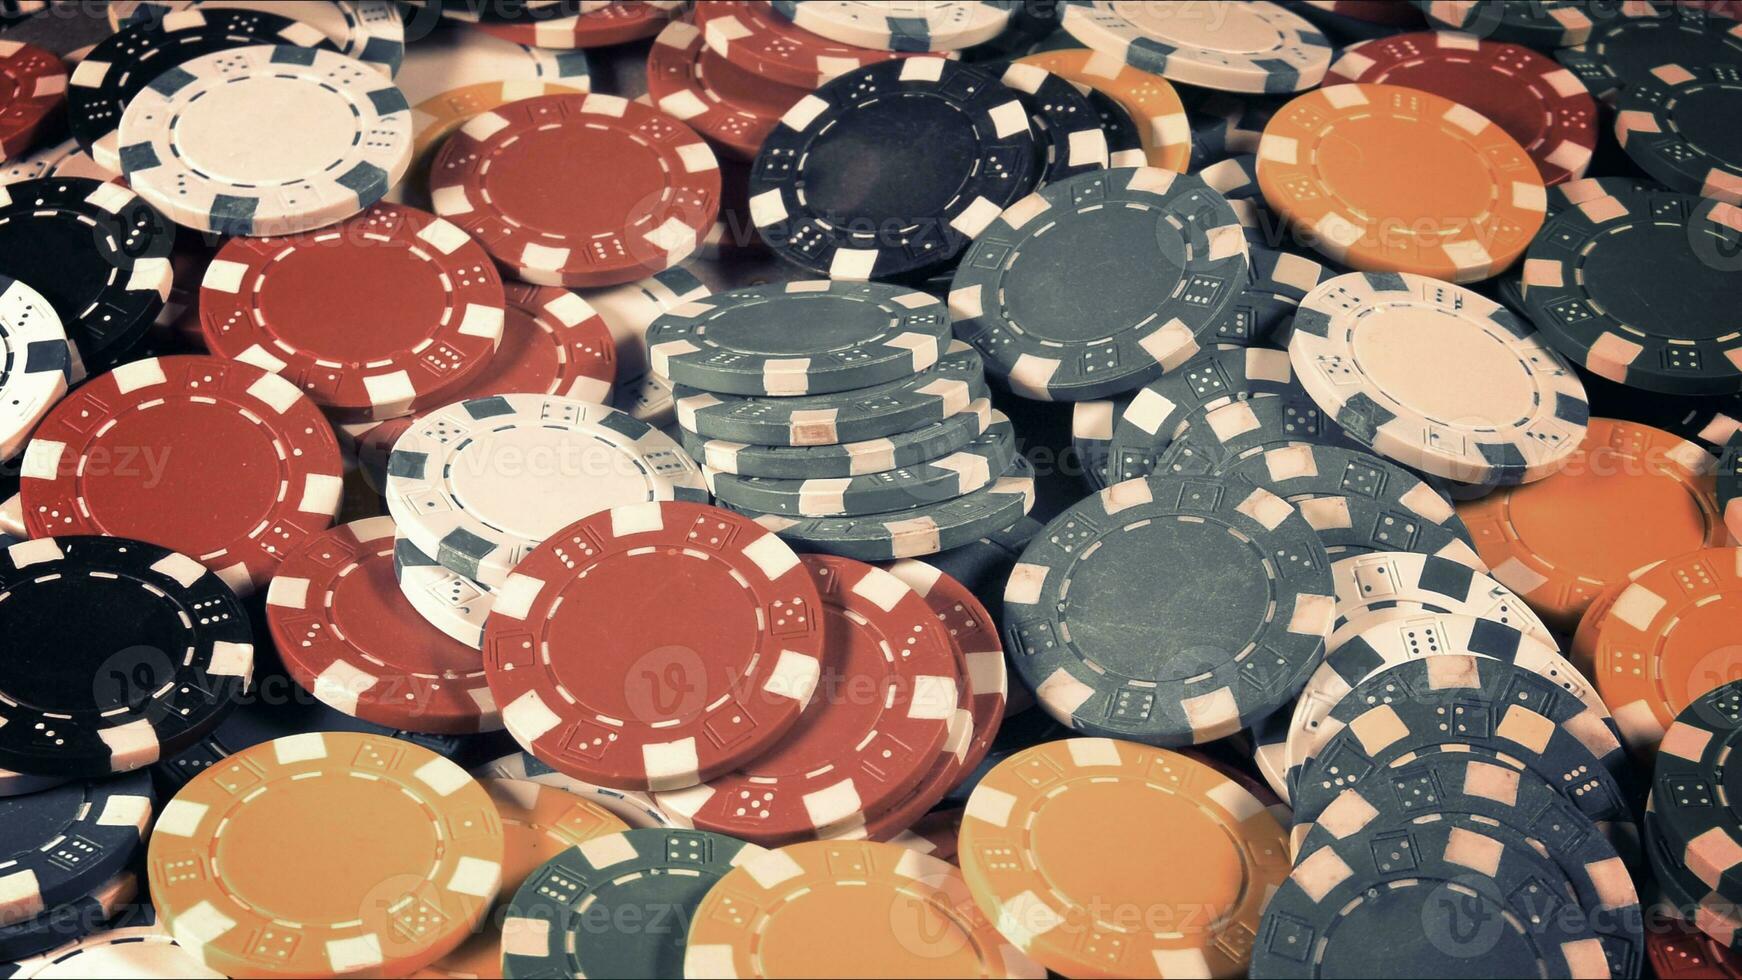 Spiel Glücksspiel Werkzeuge Geld Poker Chips foto